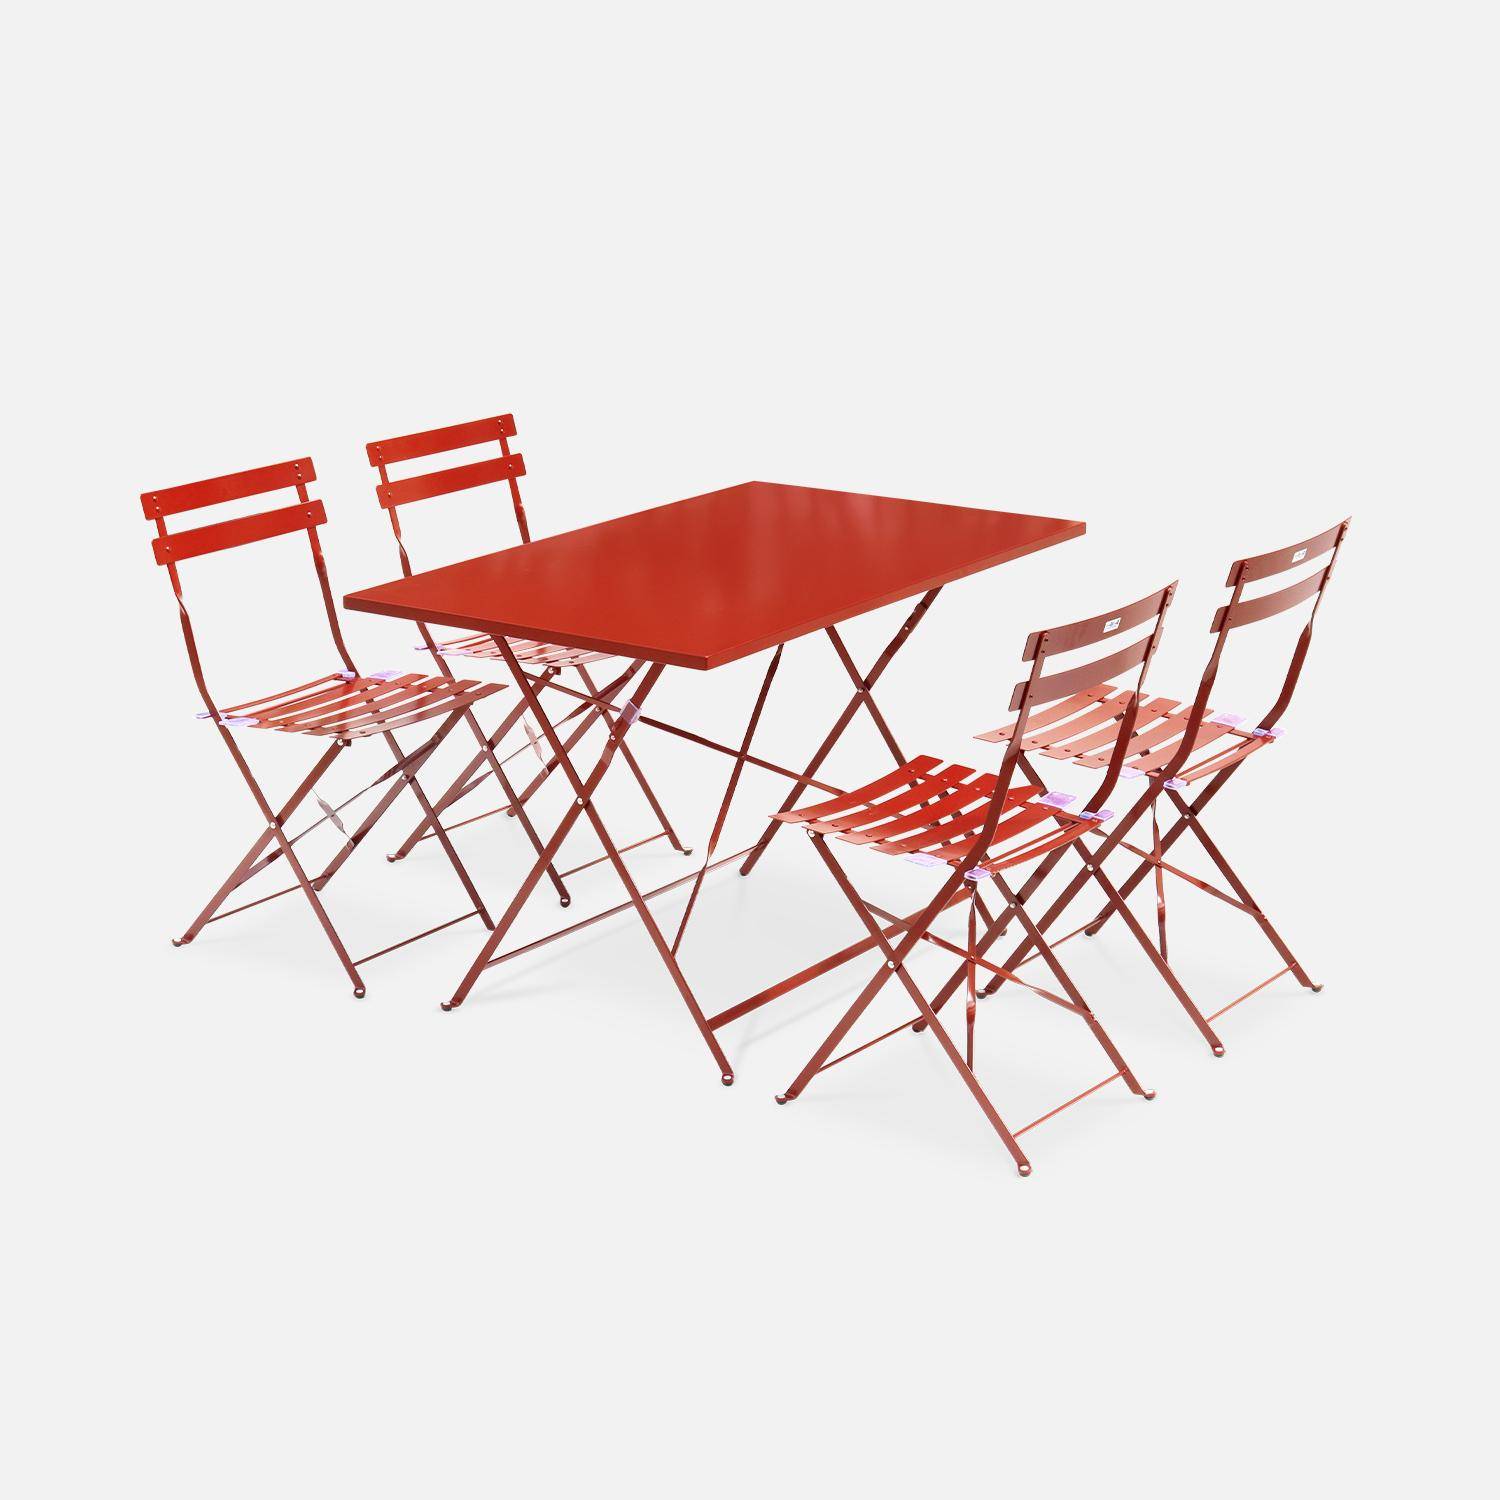 Tavolo da giardino, bar bistrot, pieghevole - modello: Emilia, rettangolare, colore: Terracotta- Tavolo, dimensioni: 110x70cm, con quattro sedie pieghevoli, acciaio termolaccato Photo1